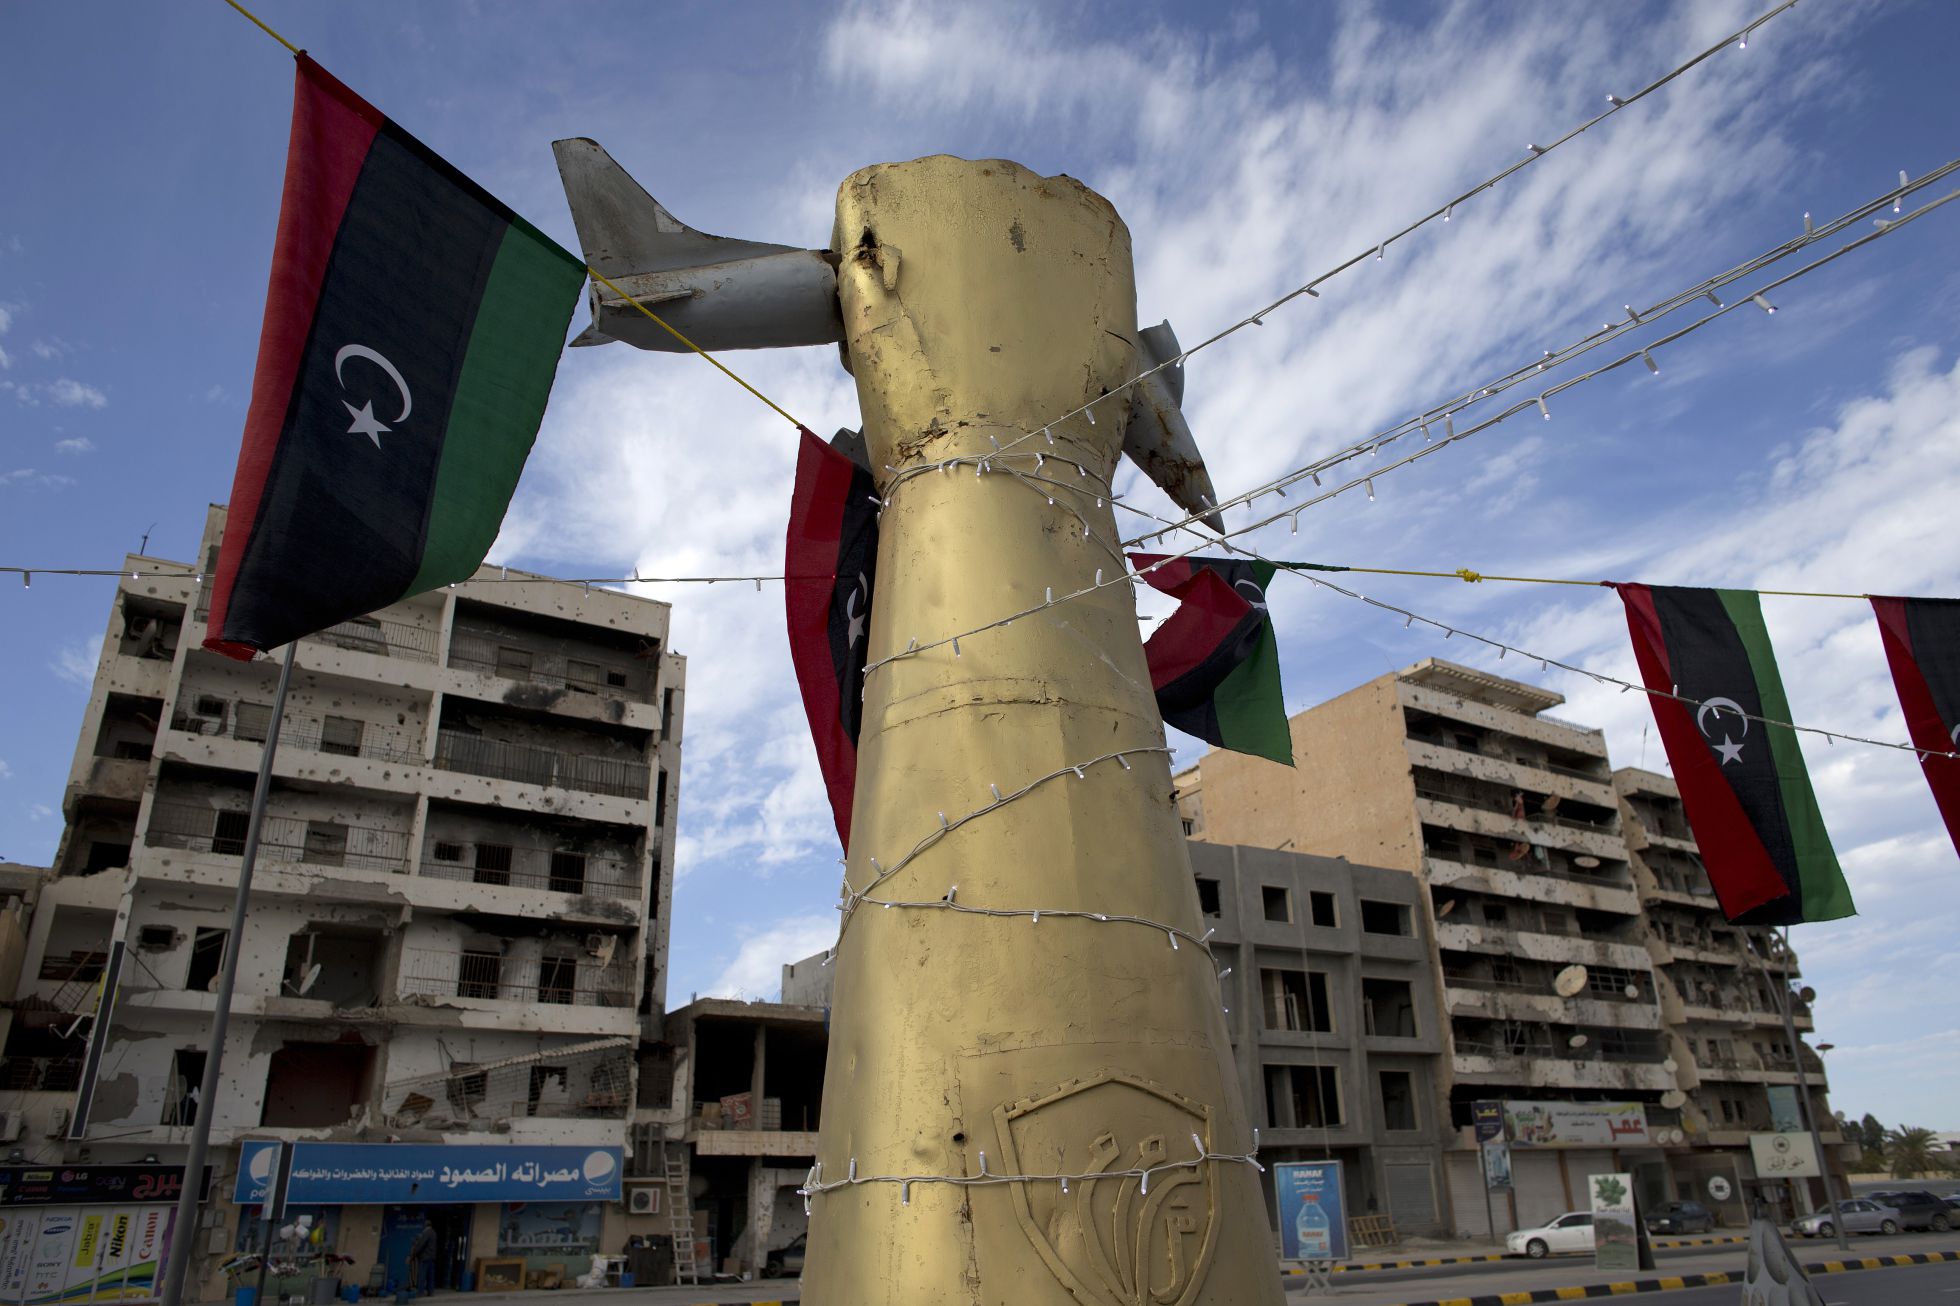 Libia - Entre la guerra civil y las manos del EI - Página 2 1457166141_627838_1457450077_noticia_normal_recorte1